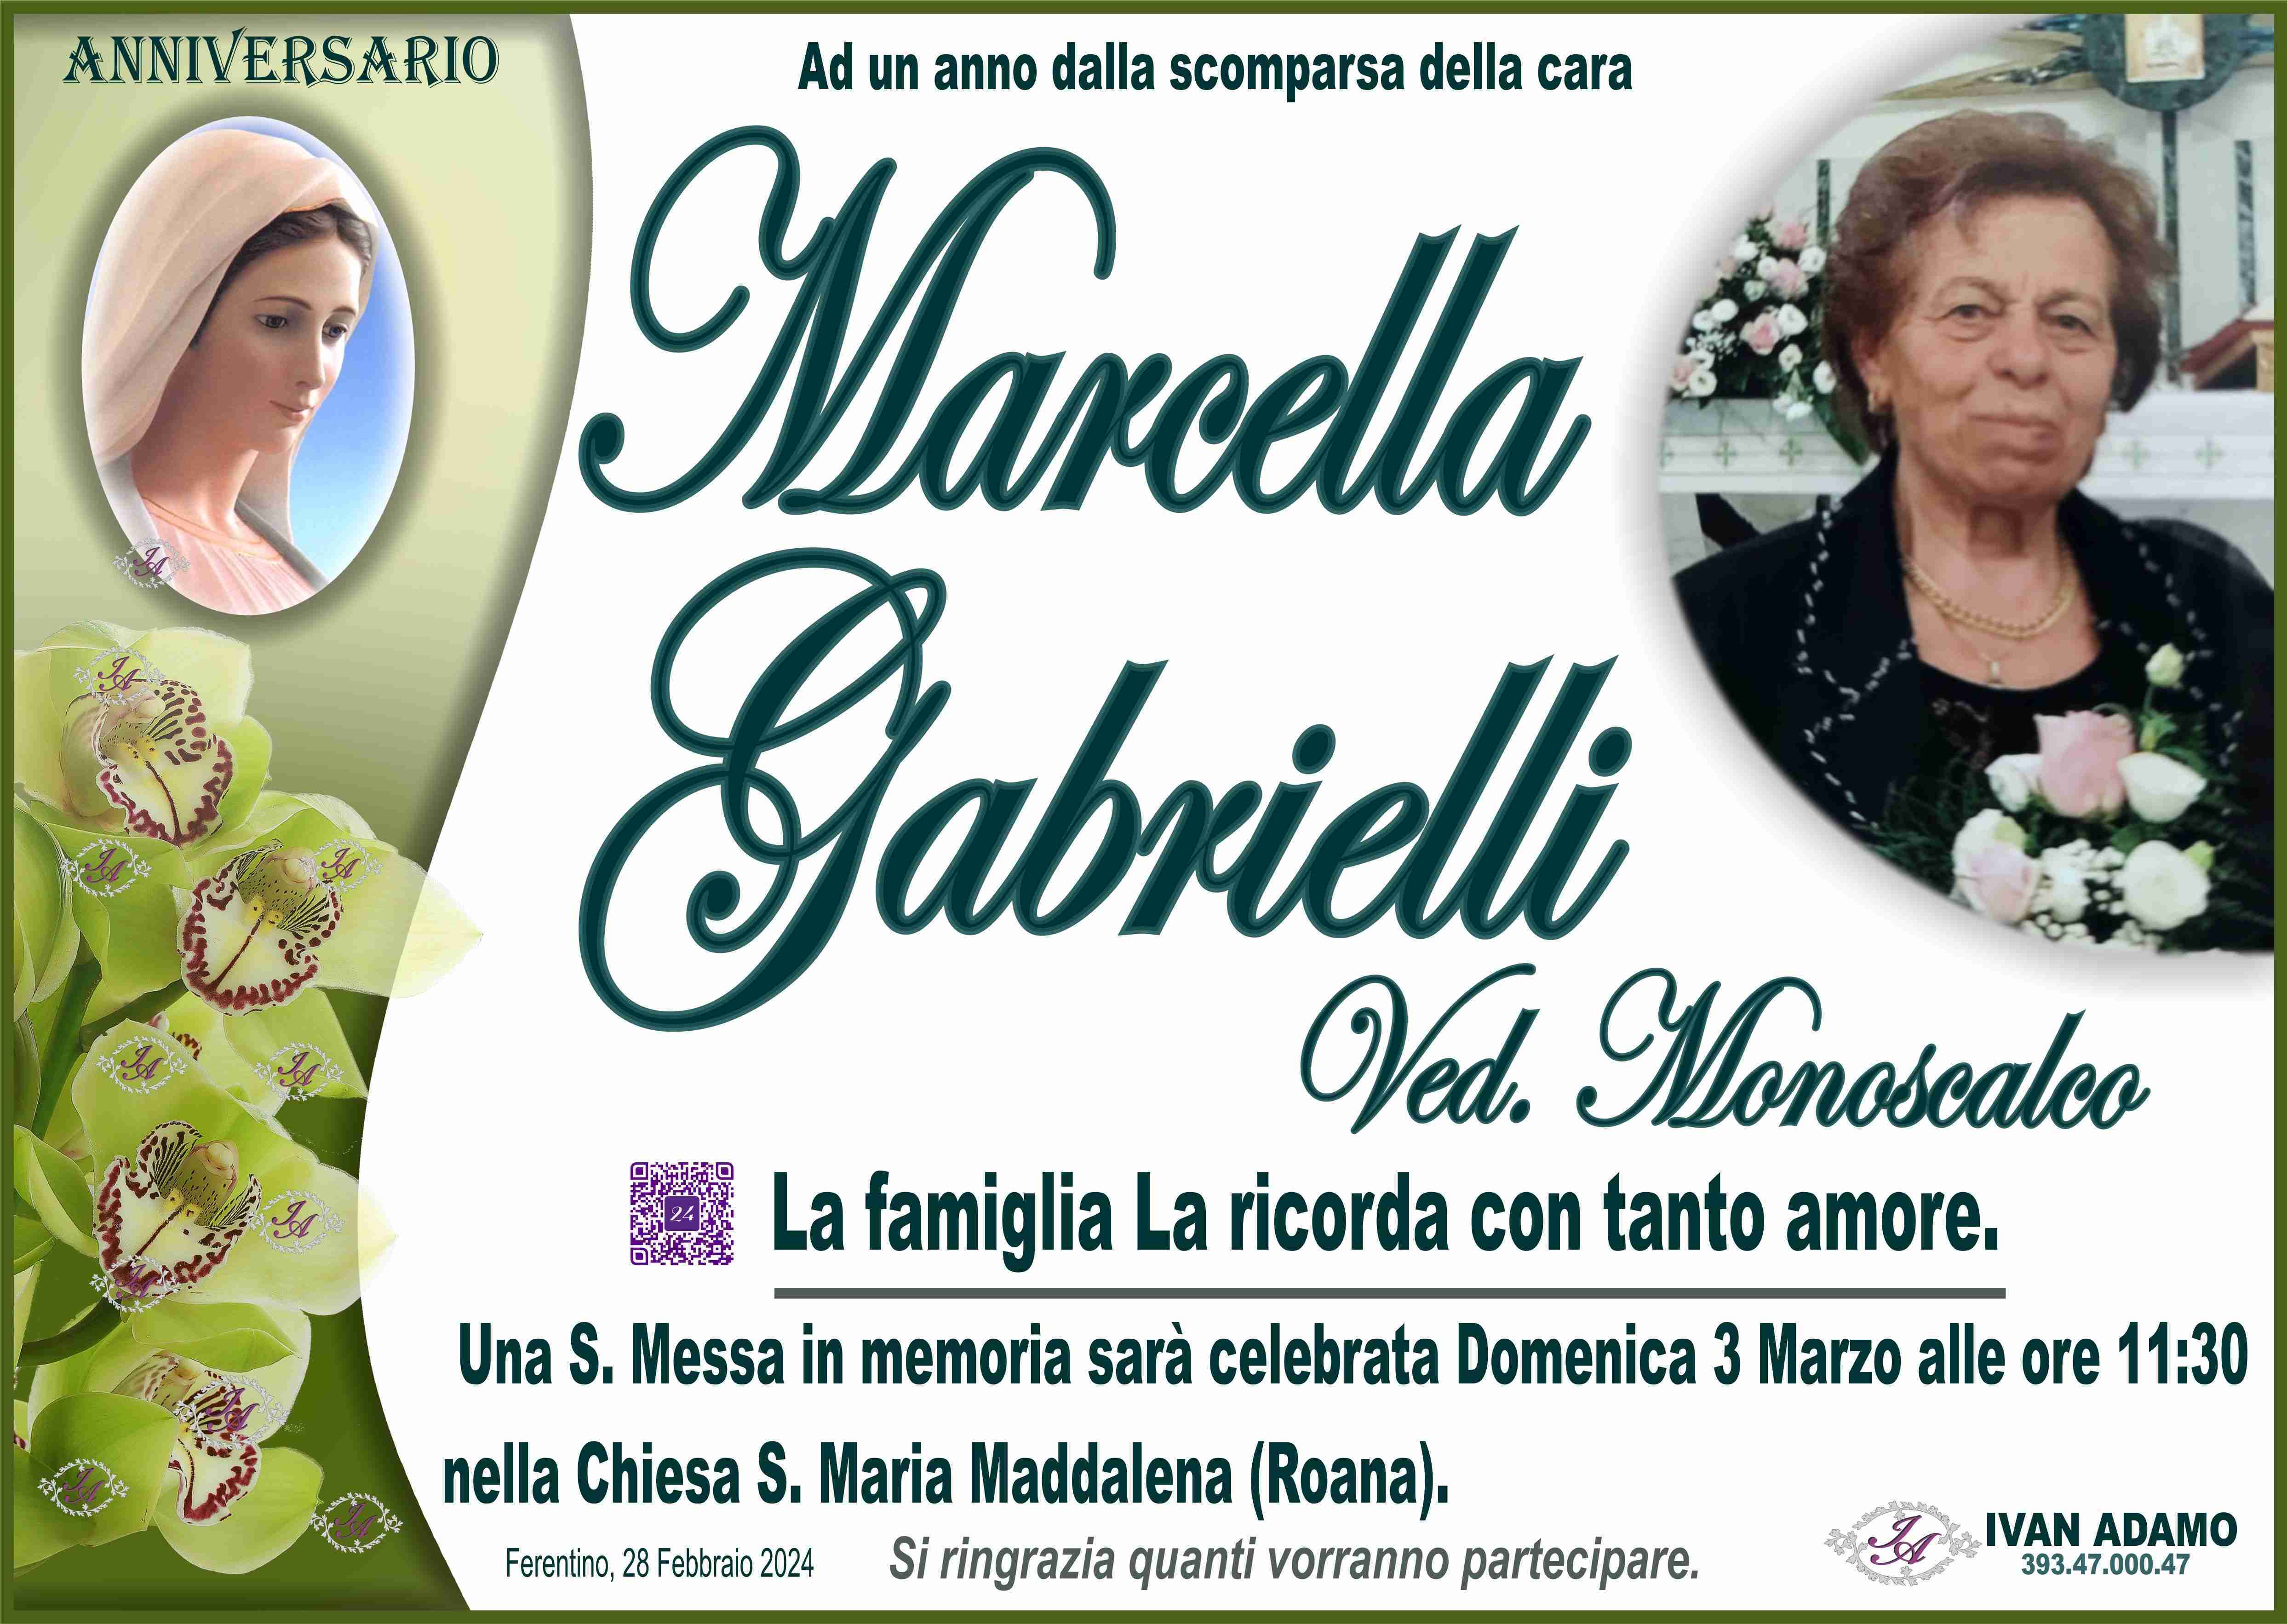 Marcella Gabrielli